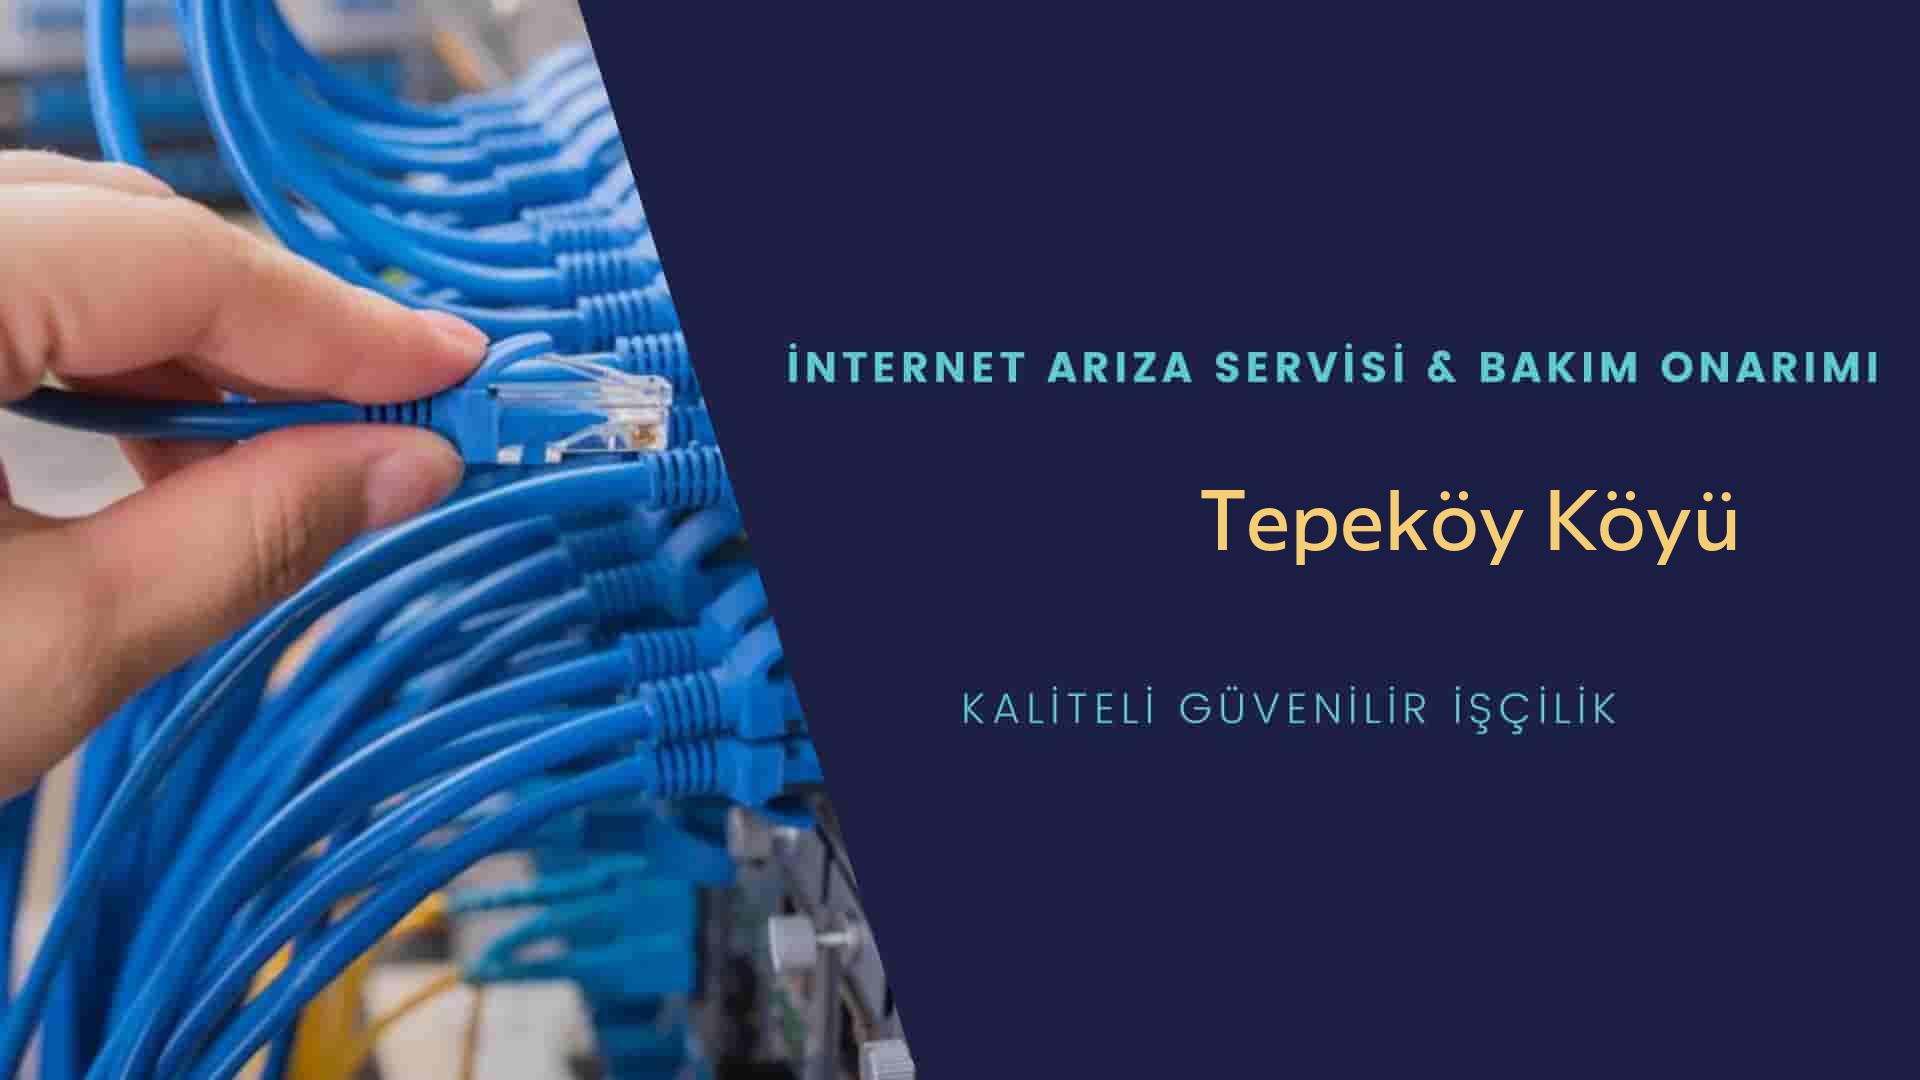 Tepeköy Köyü internet kablosu çekimi yapan yerler veya elektrikçiler mi? arıyorsunuz doğru yerdesiniz o zaman sizlere 7/24 yardımcı olacak profesyonel ustalarımız bir telefon kadar yakındır size.